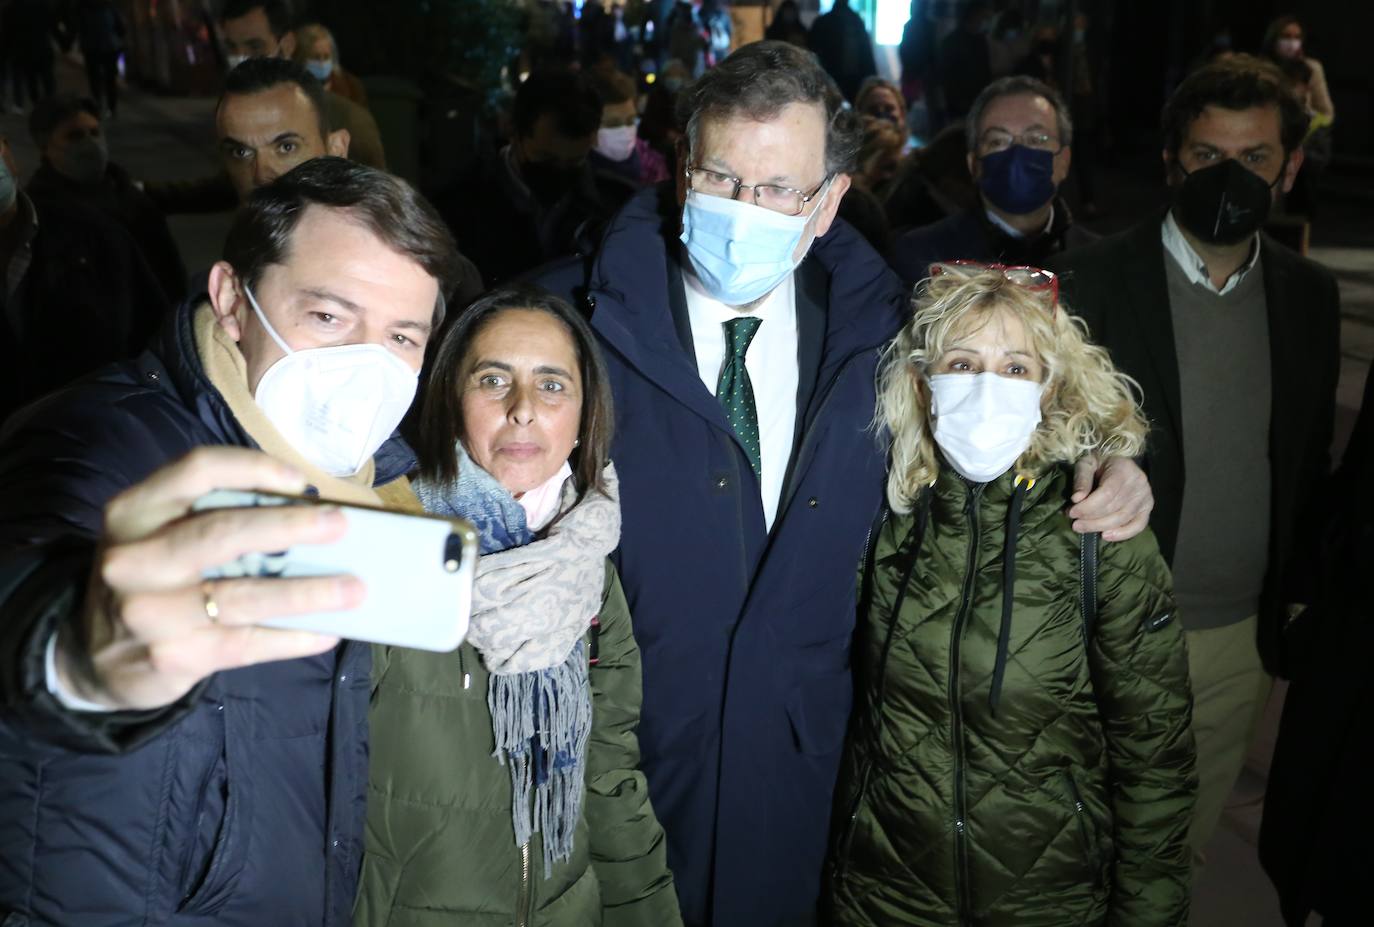 El ex presidente del Gobierno visita la capital en uno de los últimos actos de camapaña para arropar al candidato a la Junta por los populares, Alfonso Fernández Mañueco, de cara al próximo 13 de febrero.